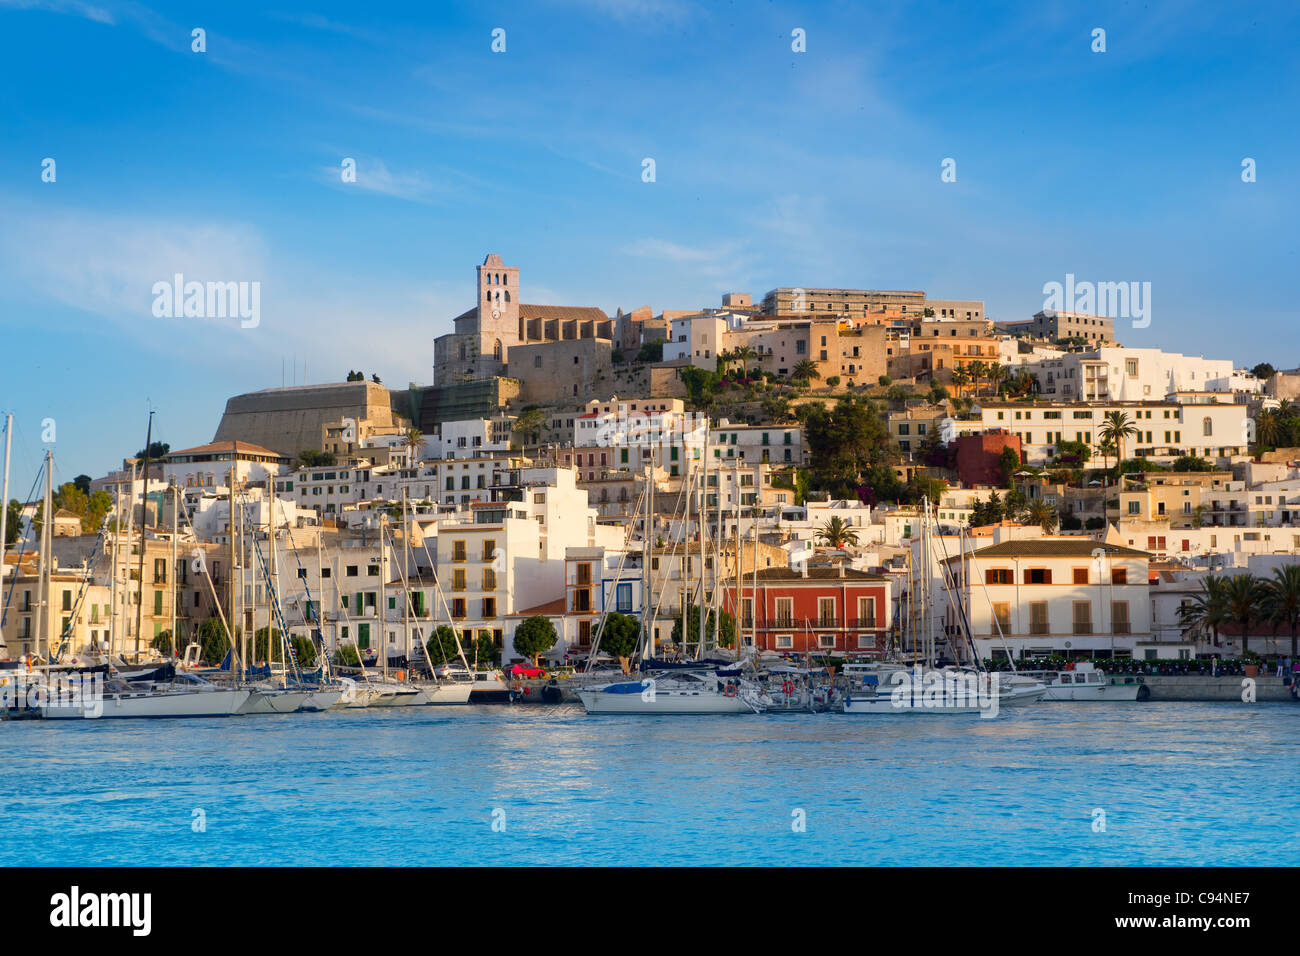 Eivissa Ibiza ville avec vue sur la mer Méditerranée Banque D'Images